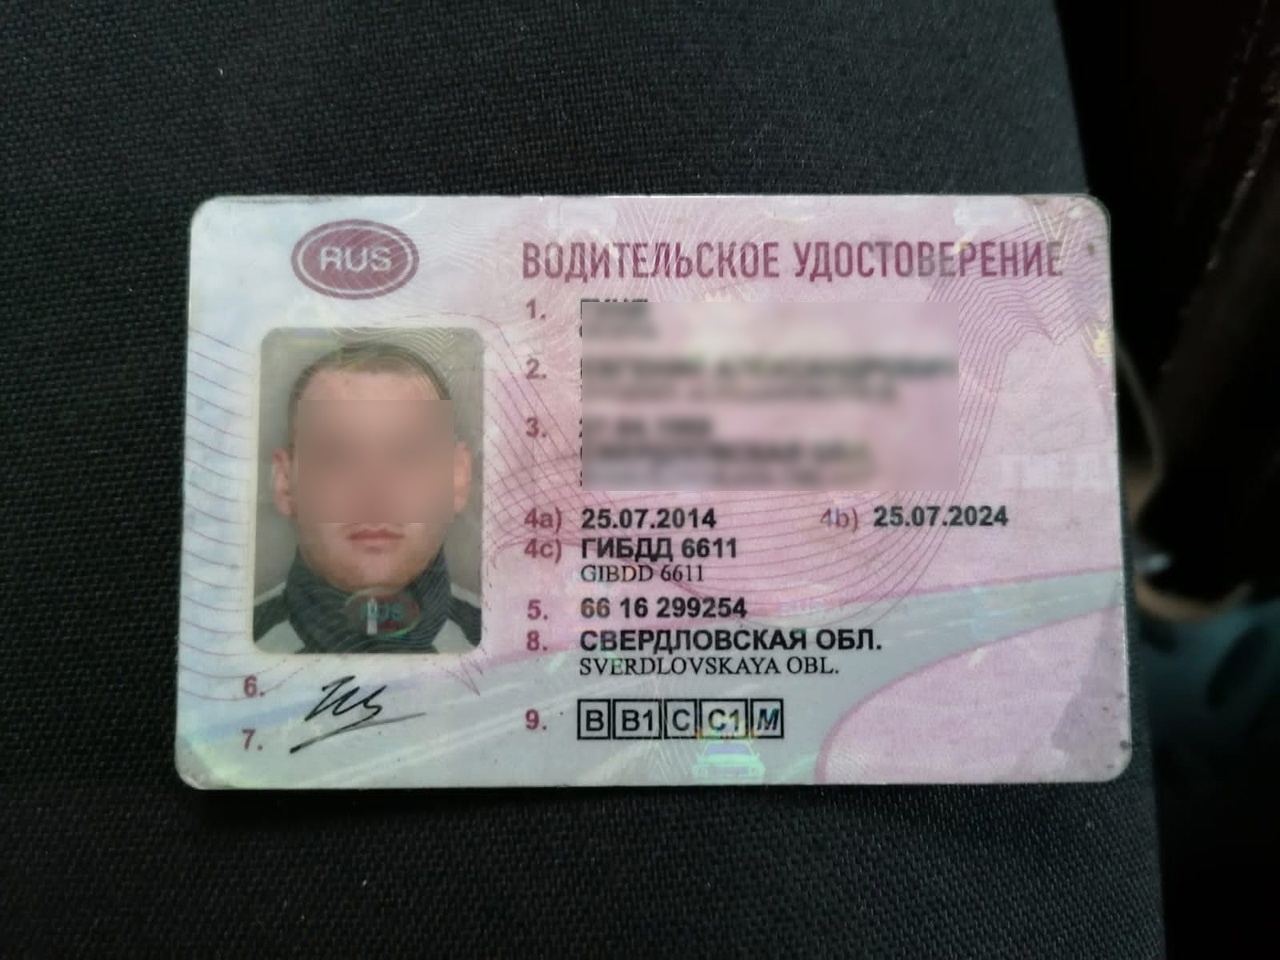 Омич купил водительские права и признался в этом ГИБДД #Новости #Общество #Омск